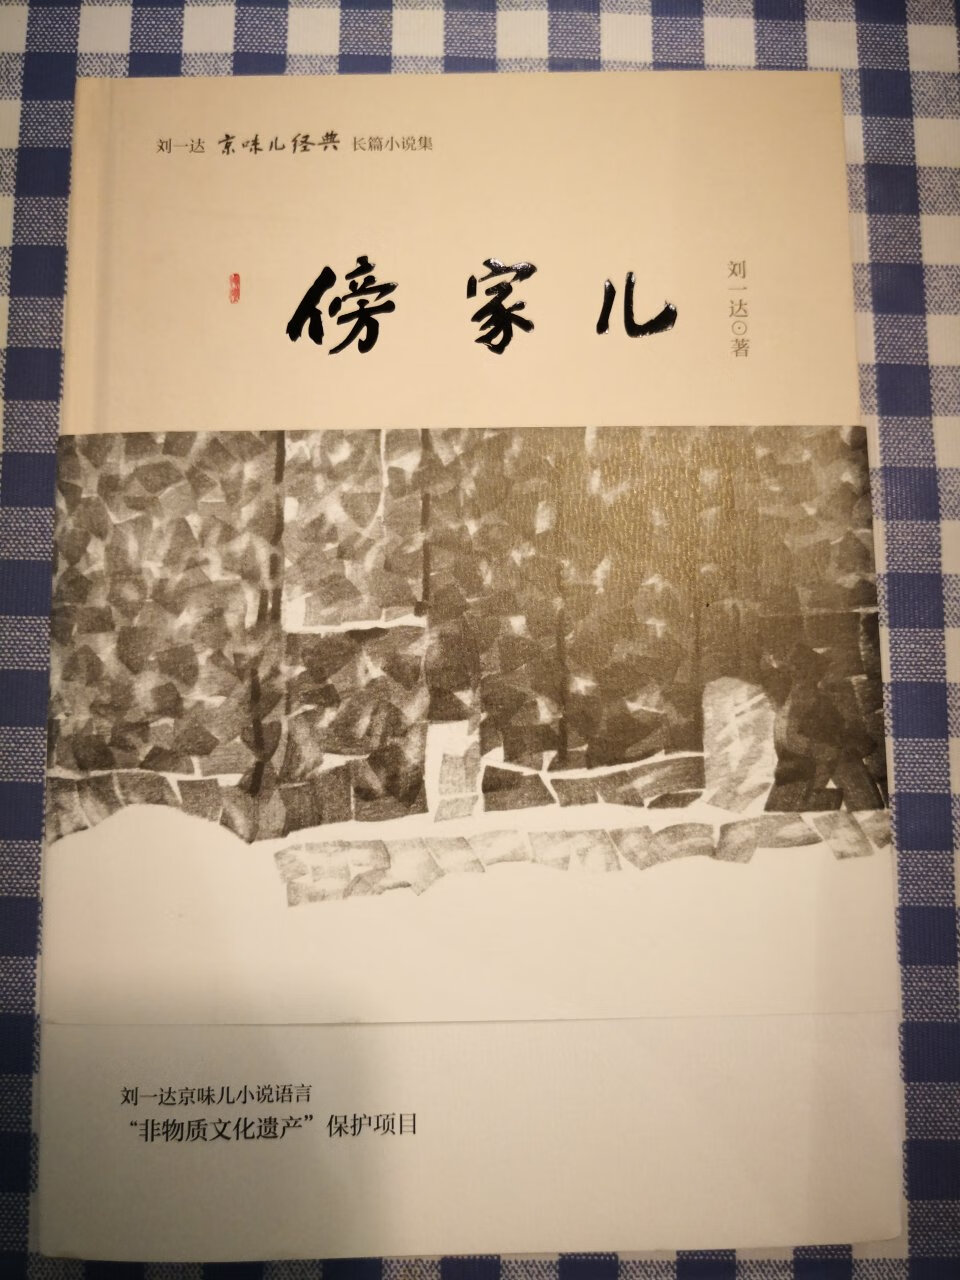 最喜欢的作家之一，京味儿十足，如今老北京文化逐渐淡化，小说引人入胜，勾起了许多儿时的记忆。我爱我的大北京。